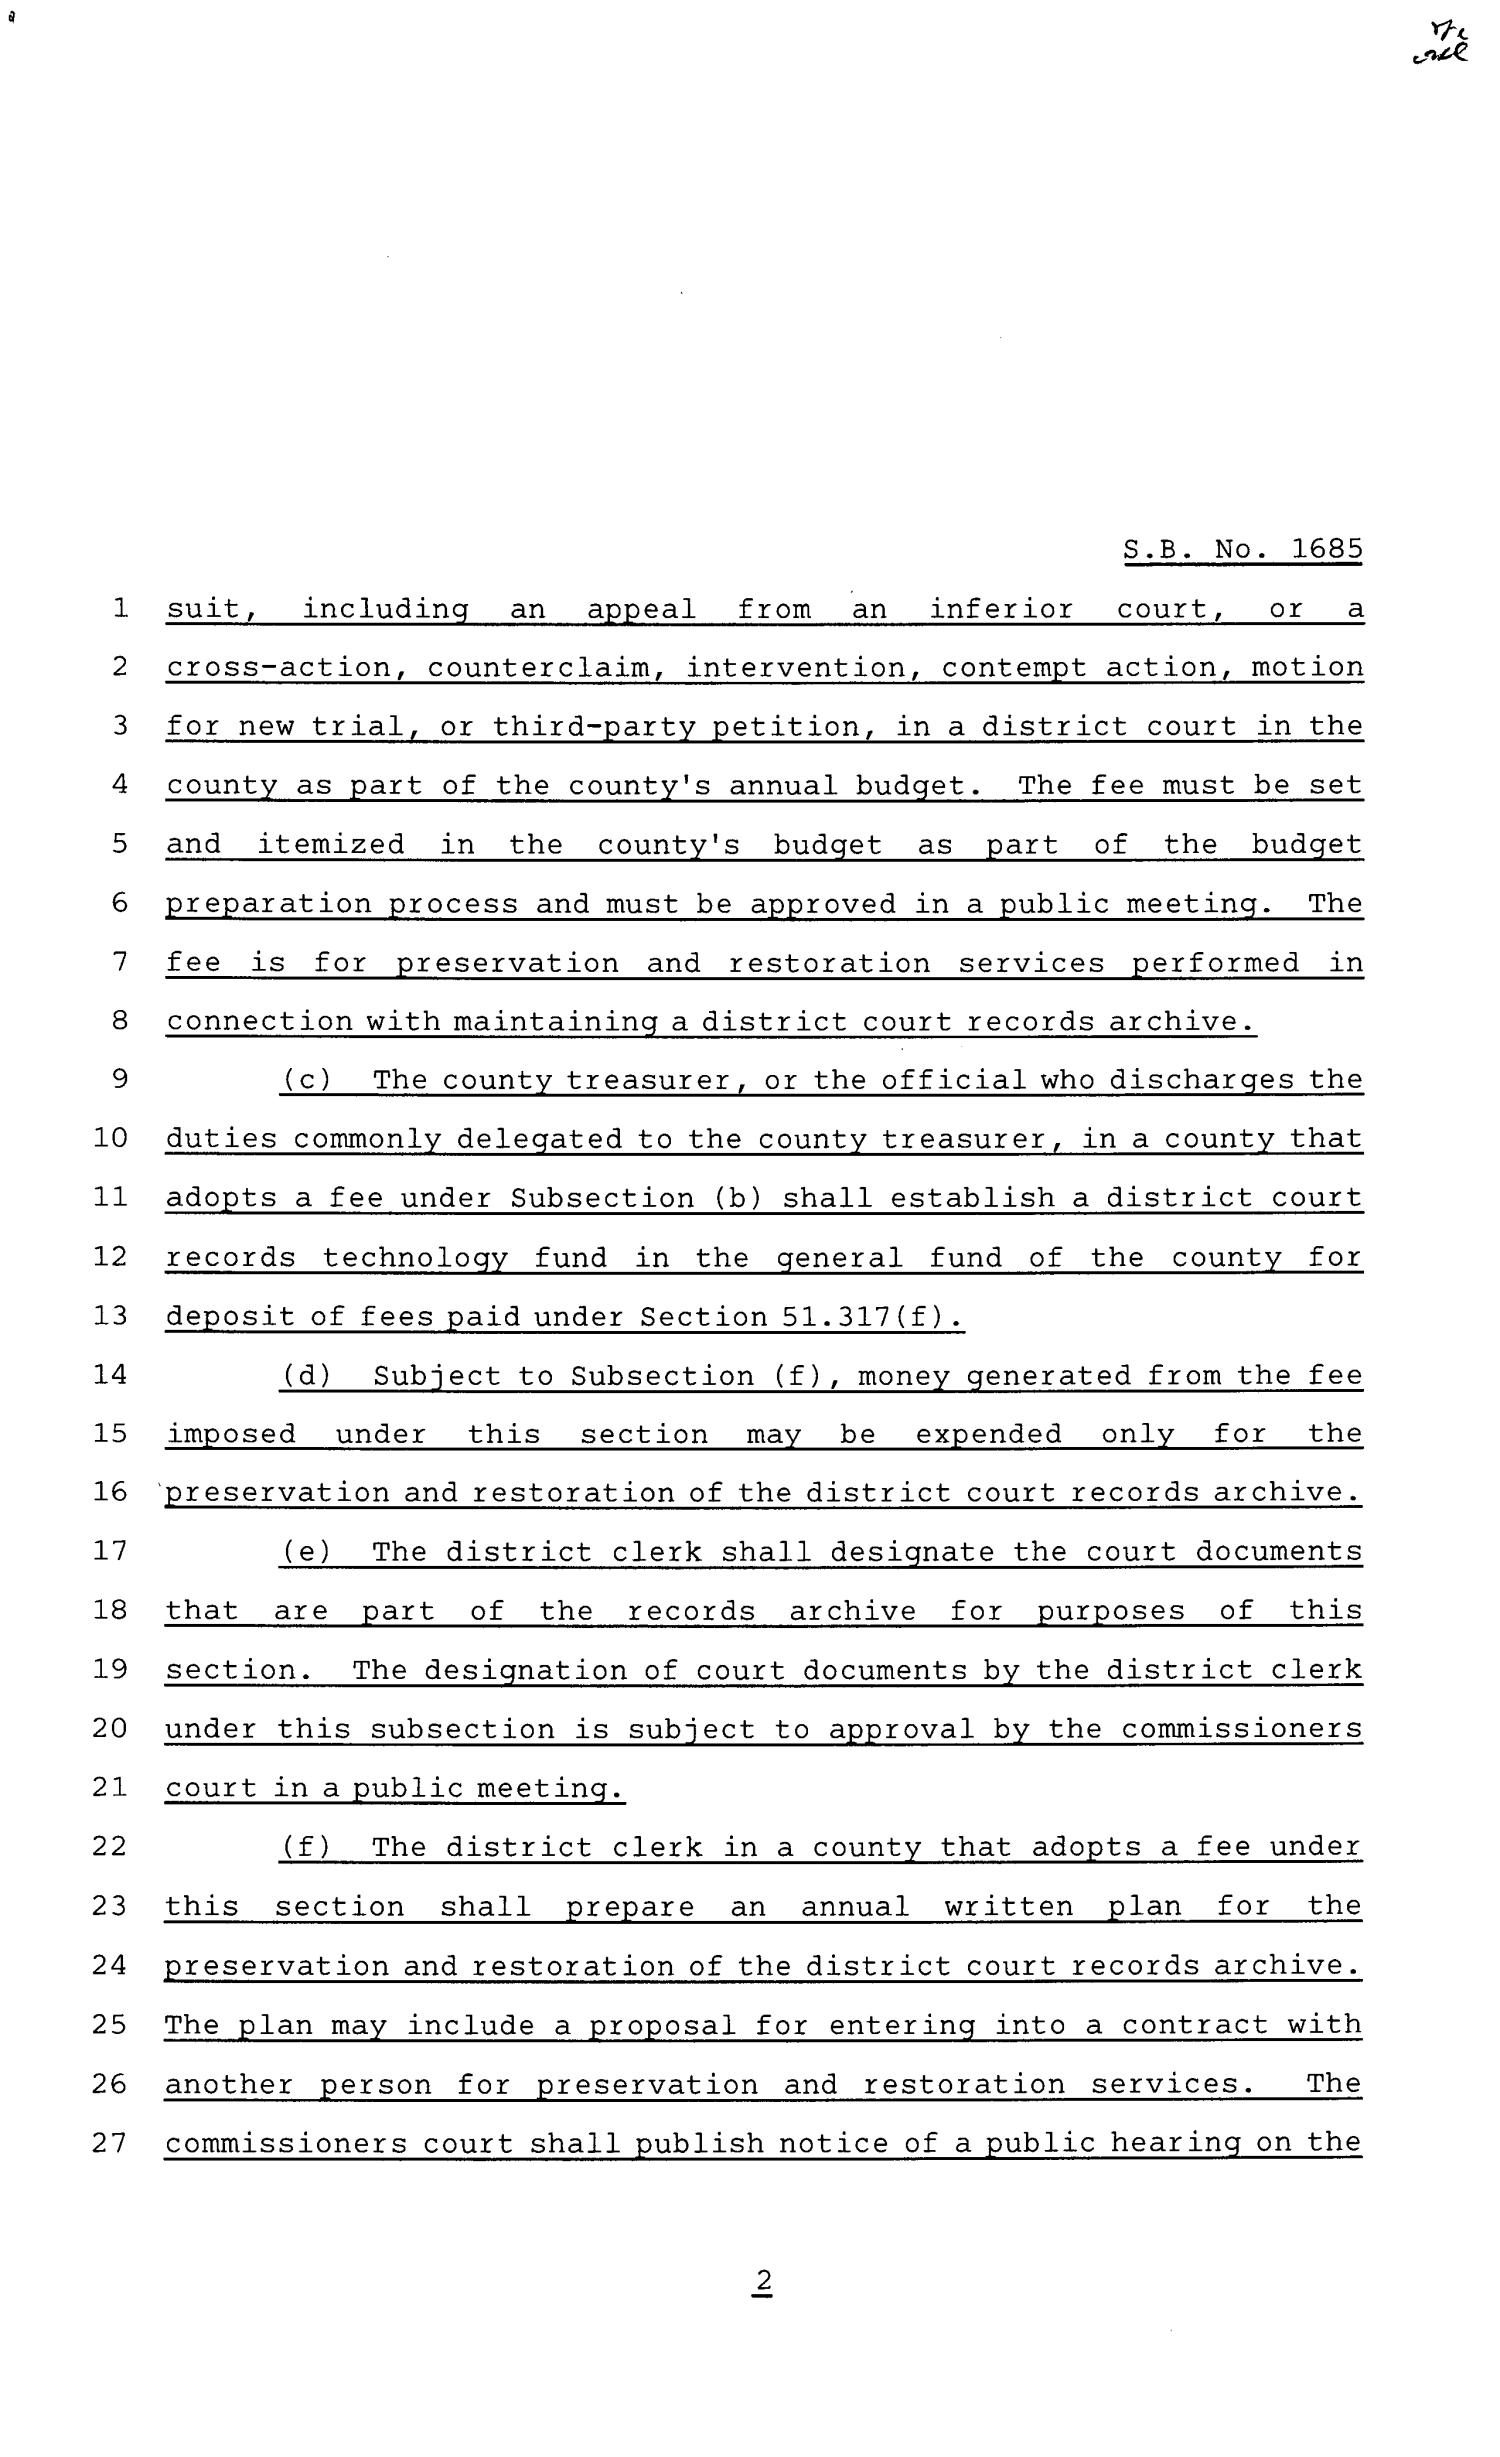 81st Texas Legislature, Senate Bill 1685, Chapter 822
                                                
                                                    [Sequence #]: 2 of 6
                                                